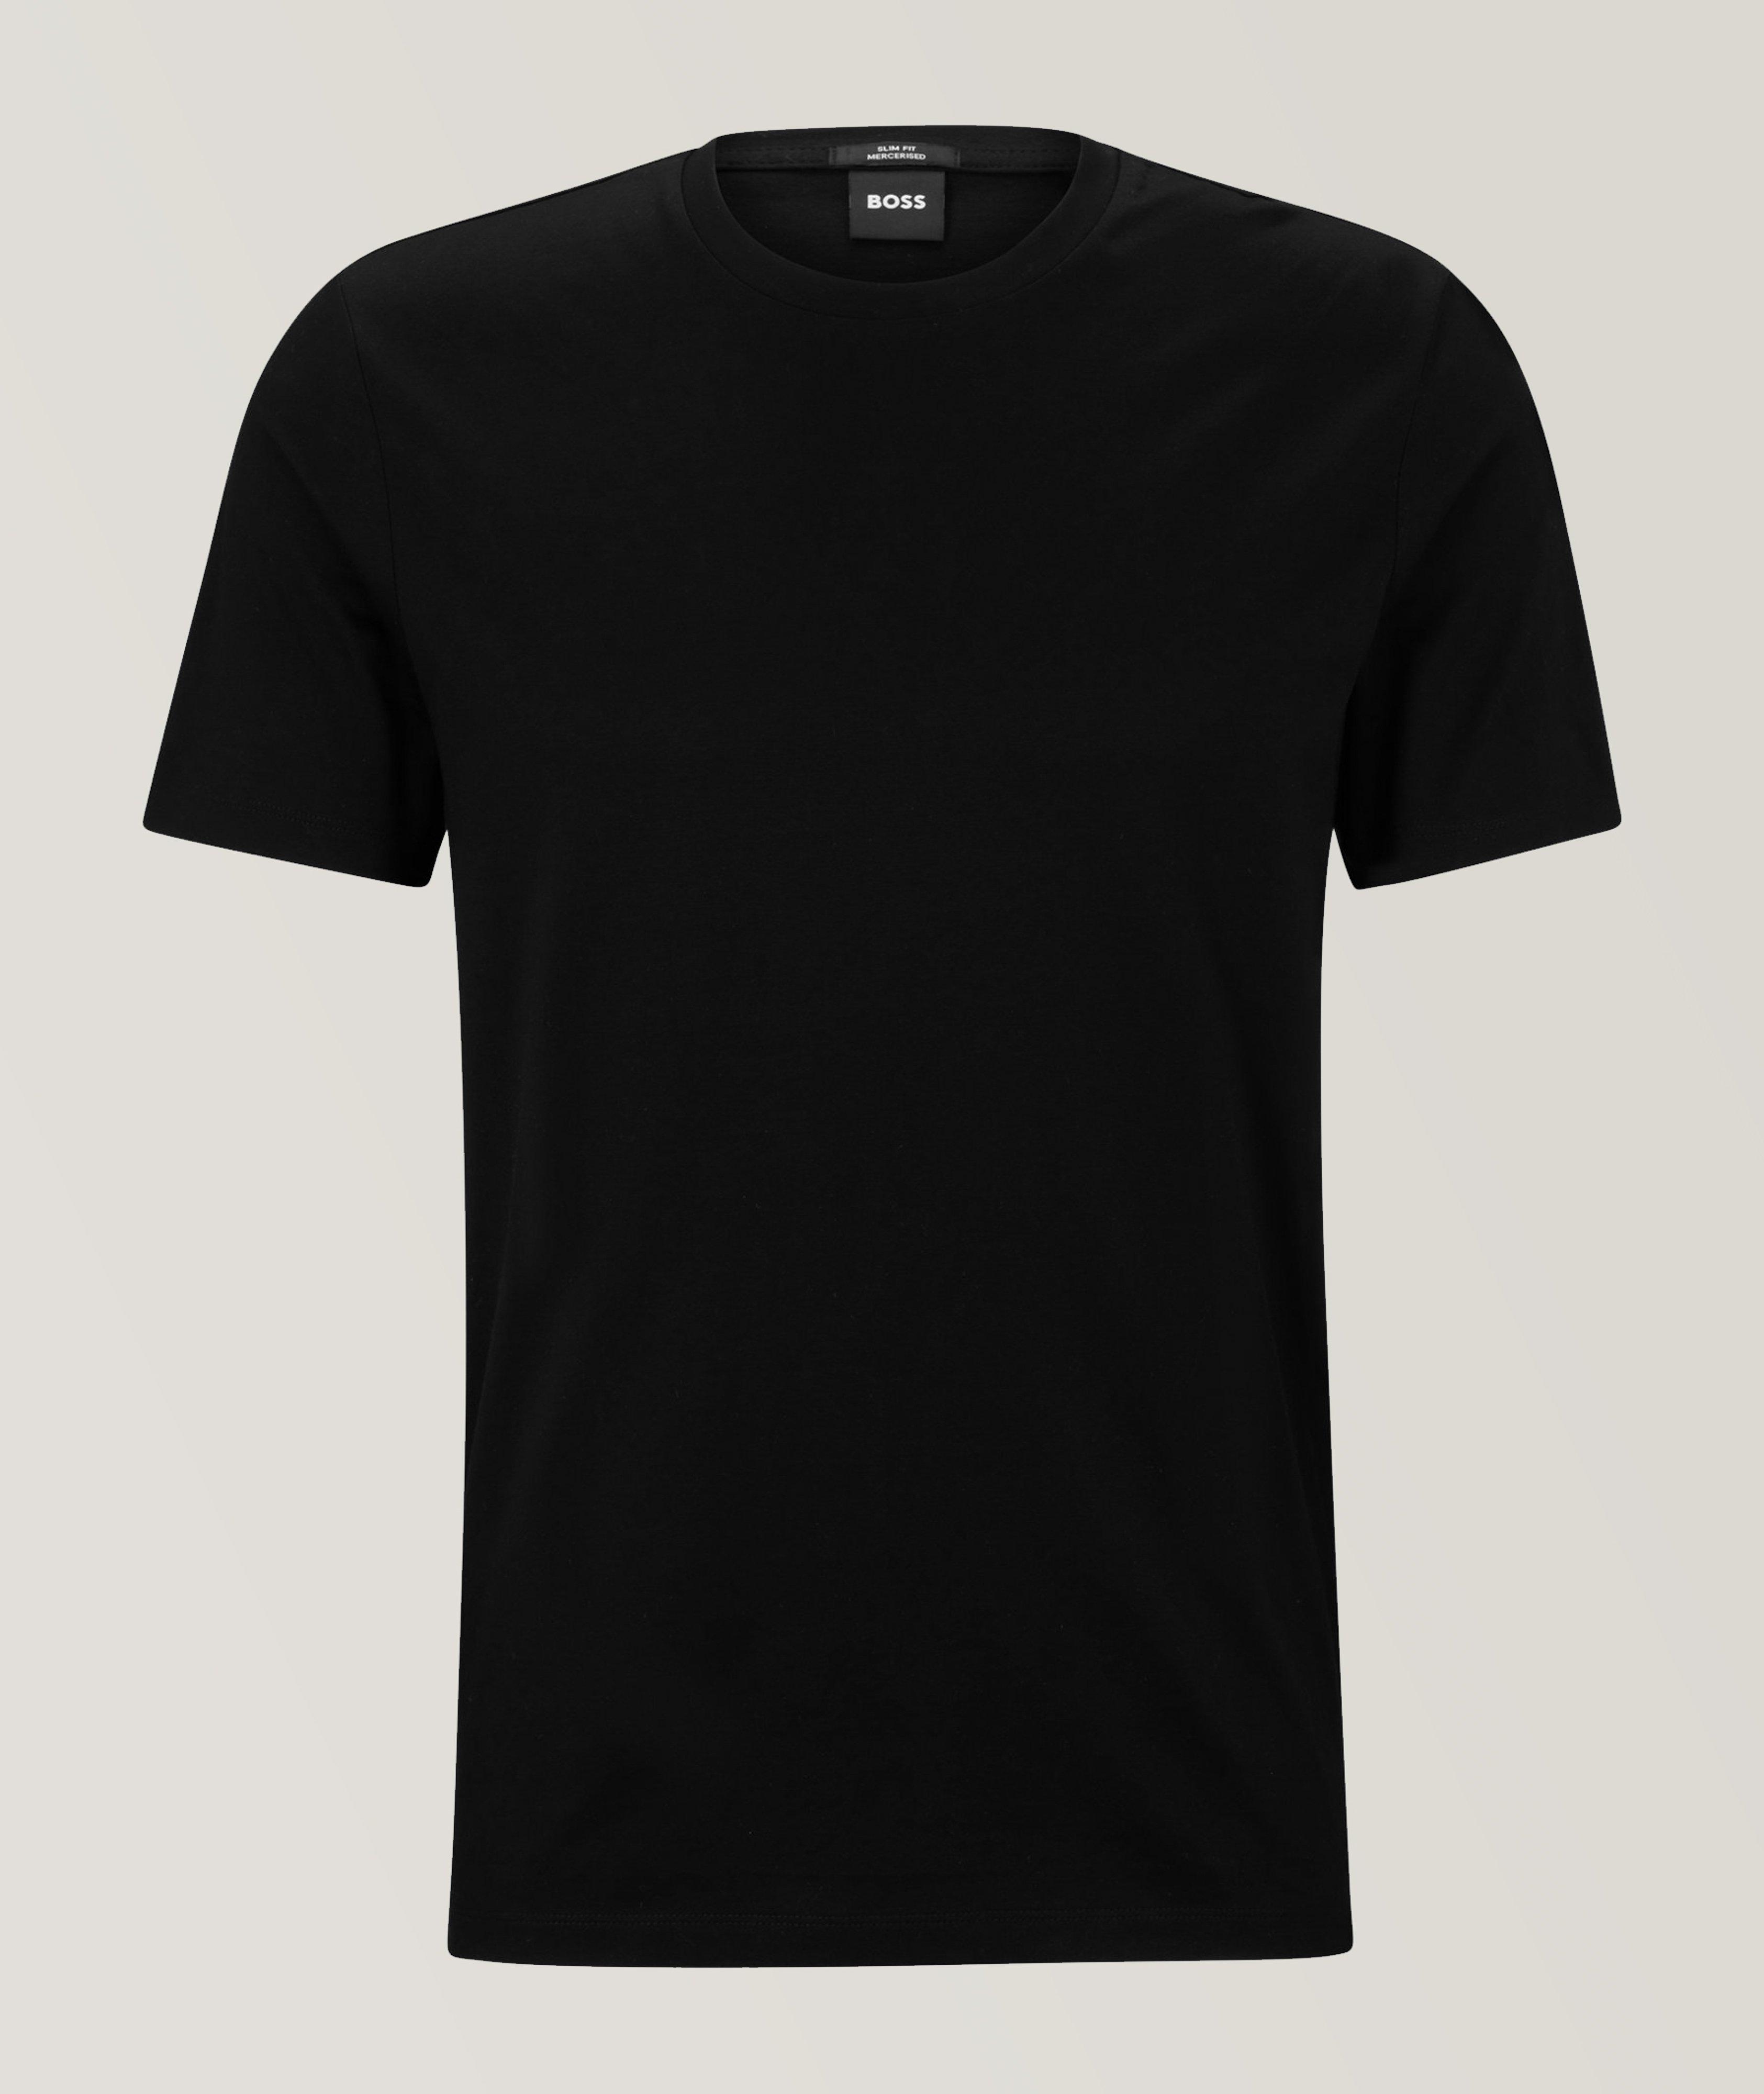 Tessler Mercerised Cotton Jersey T-Shirt image 0